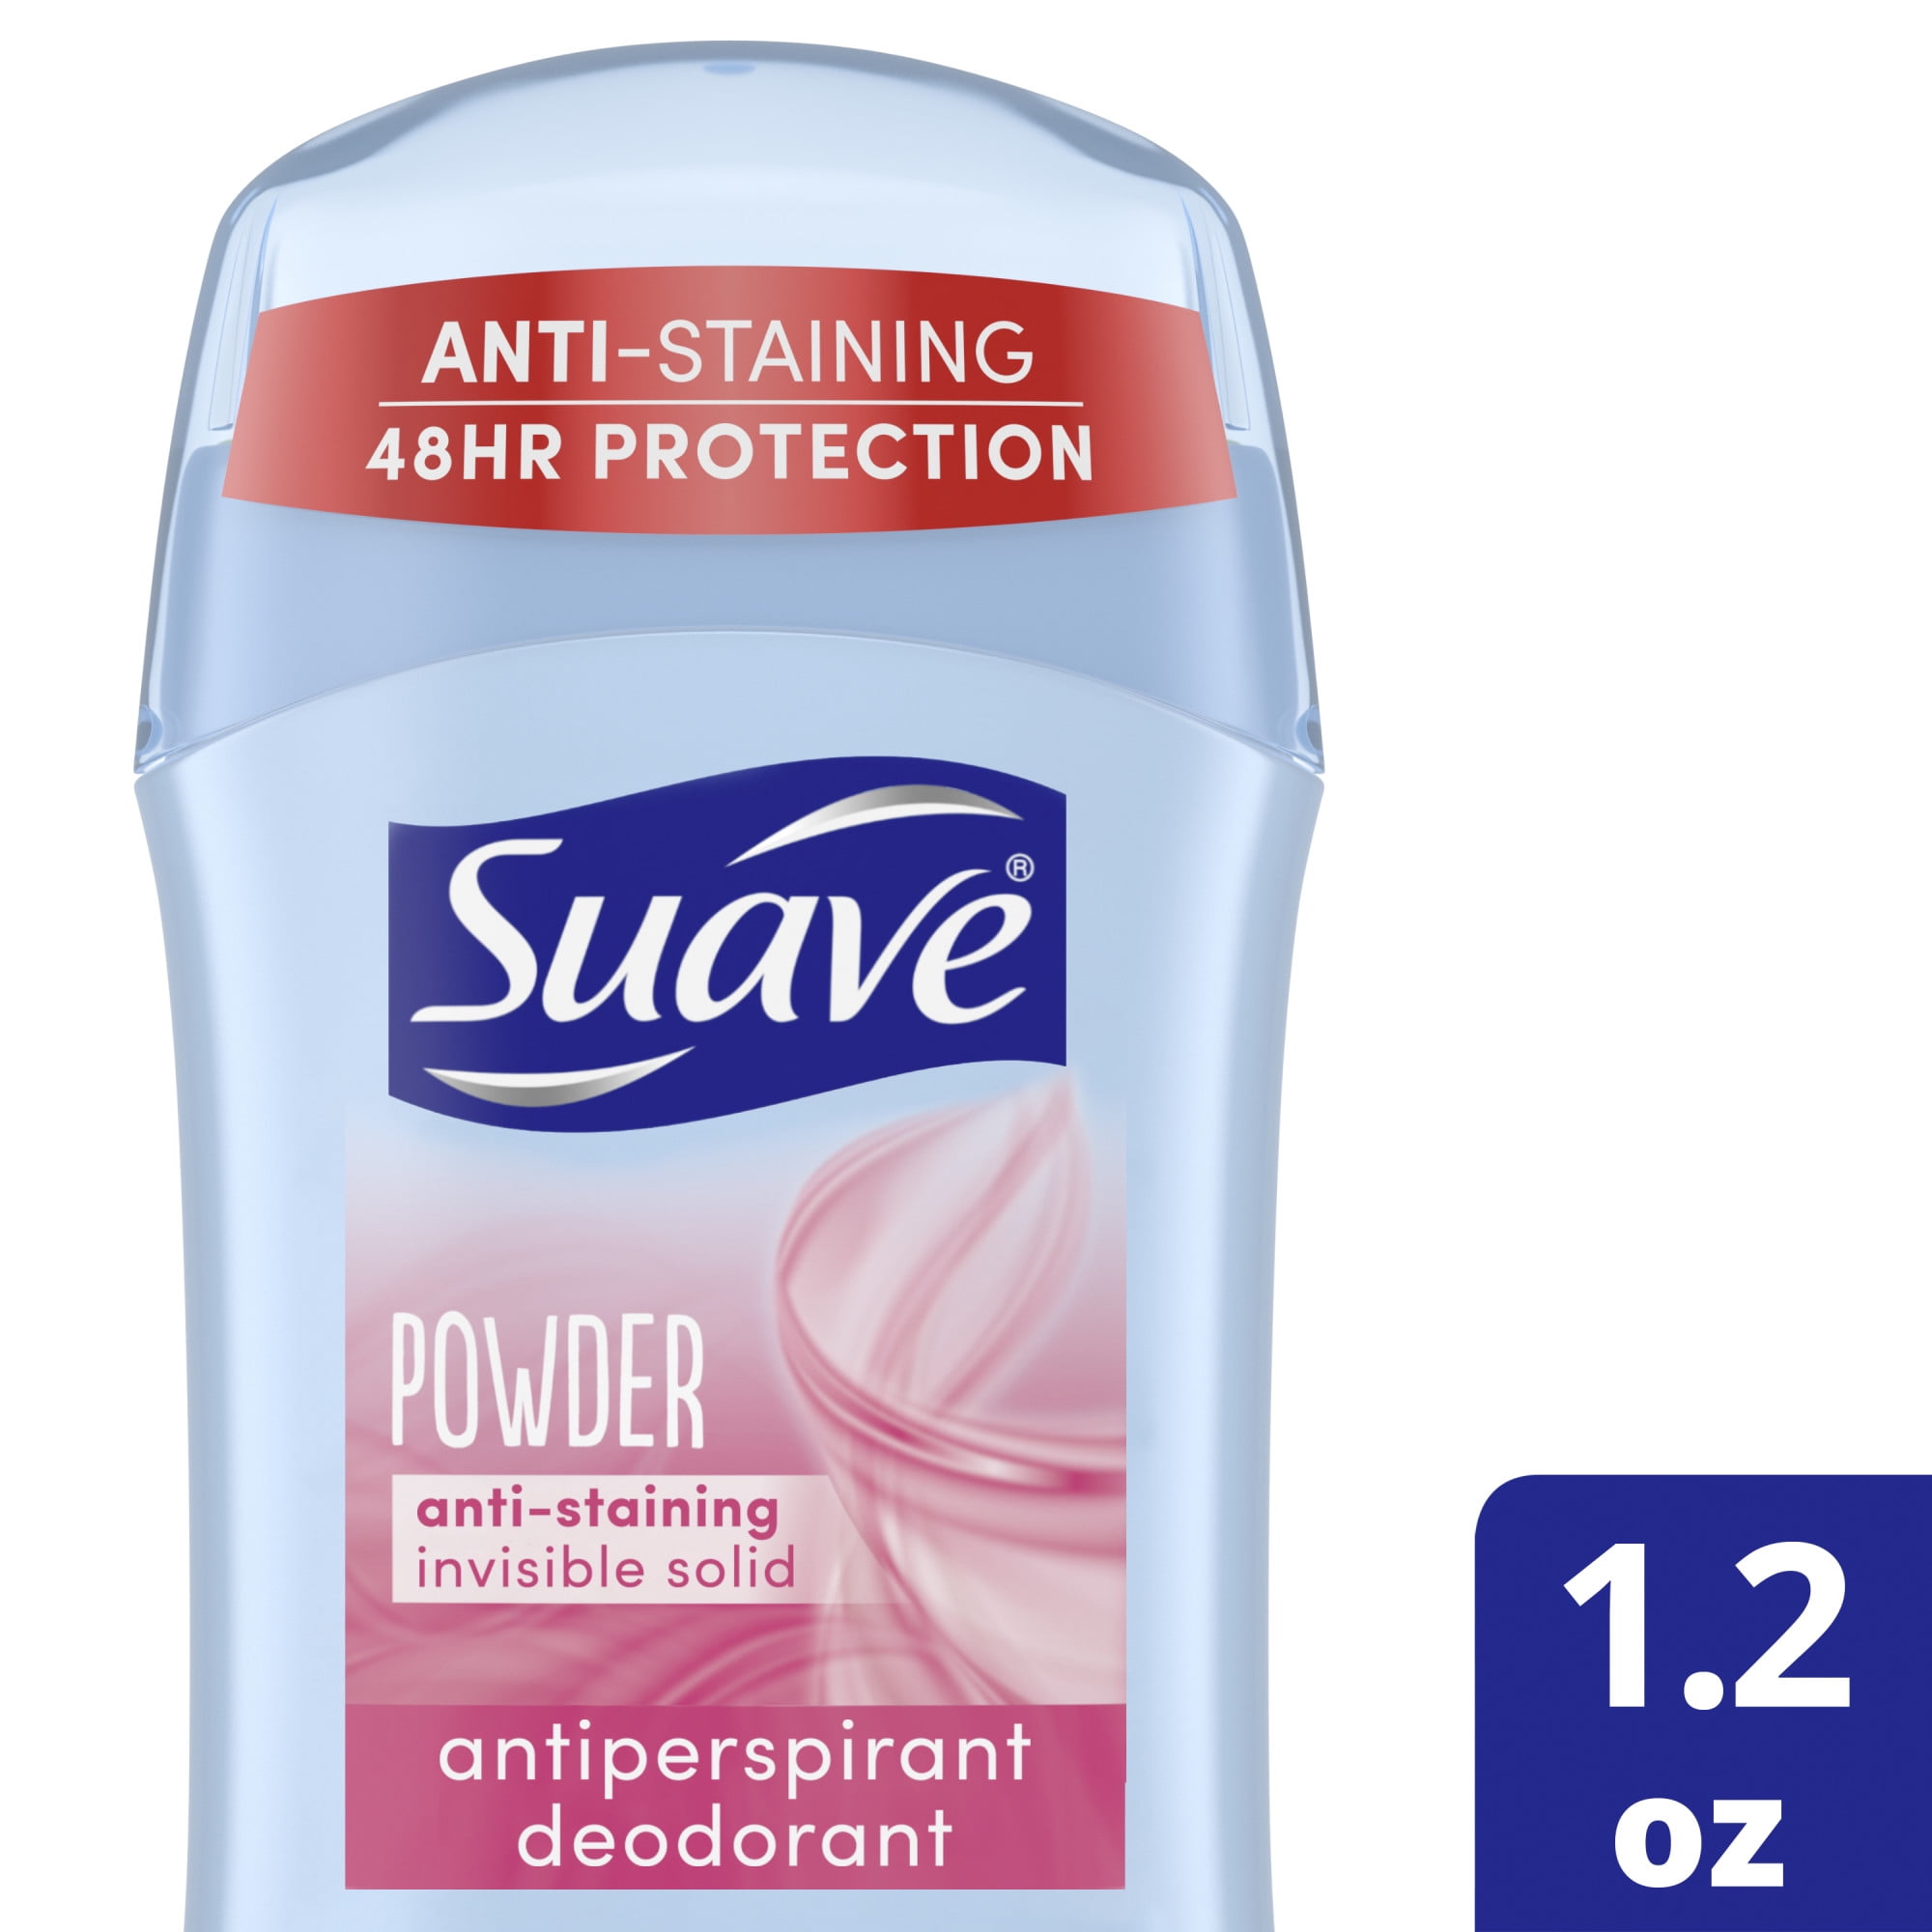 Suave Deodorant Antiperspirant Powder, 1.2 oz -